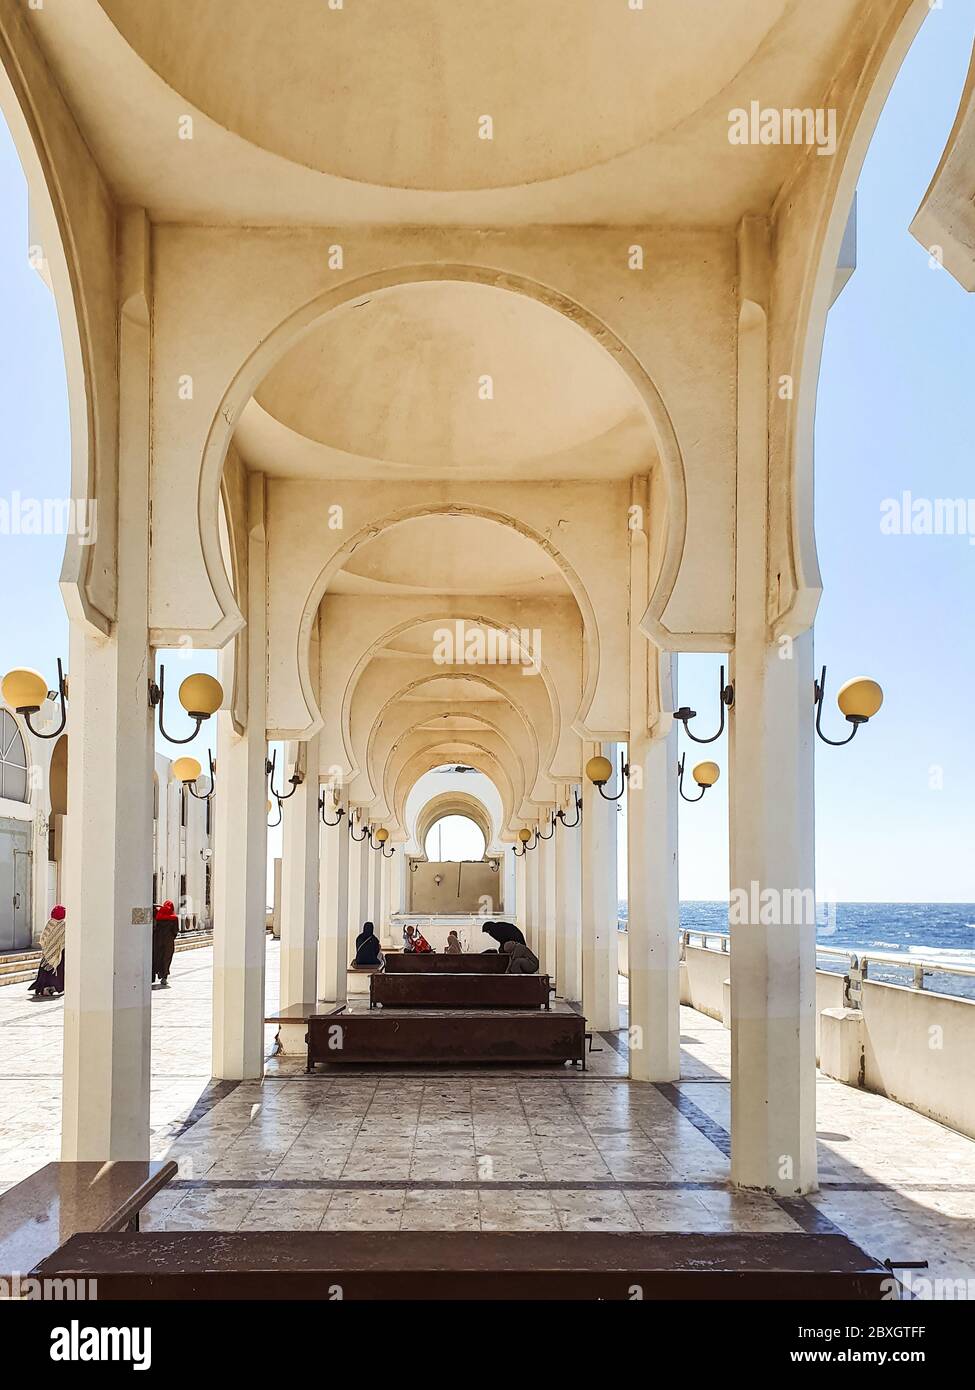 Jeddah / Arabia Saudita - 20 de enero de 2020: Hermosa mezquita cerca del mar con arcos y columnas y creyentes orando Foto de stock